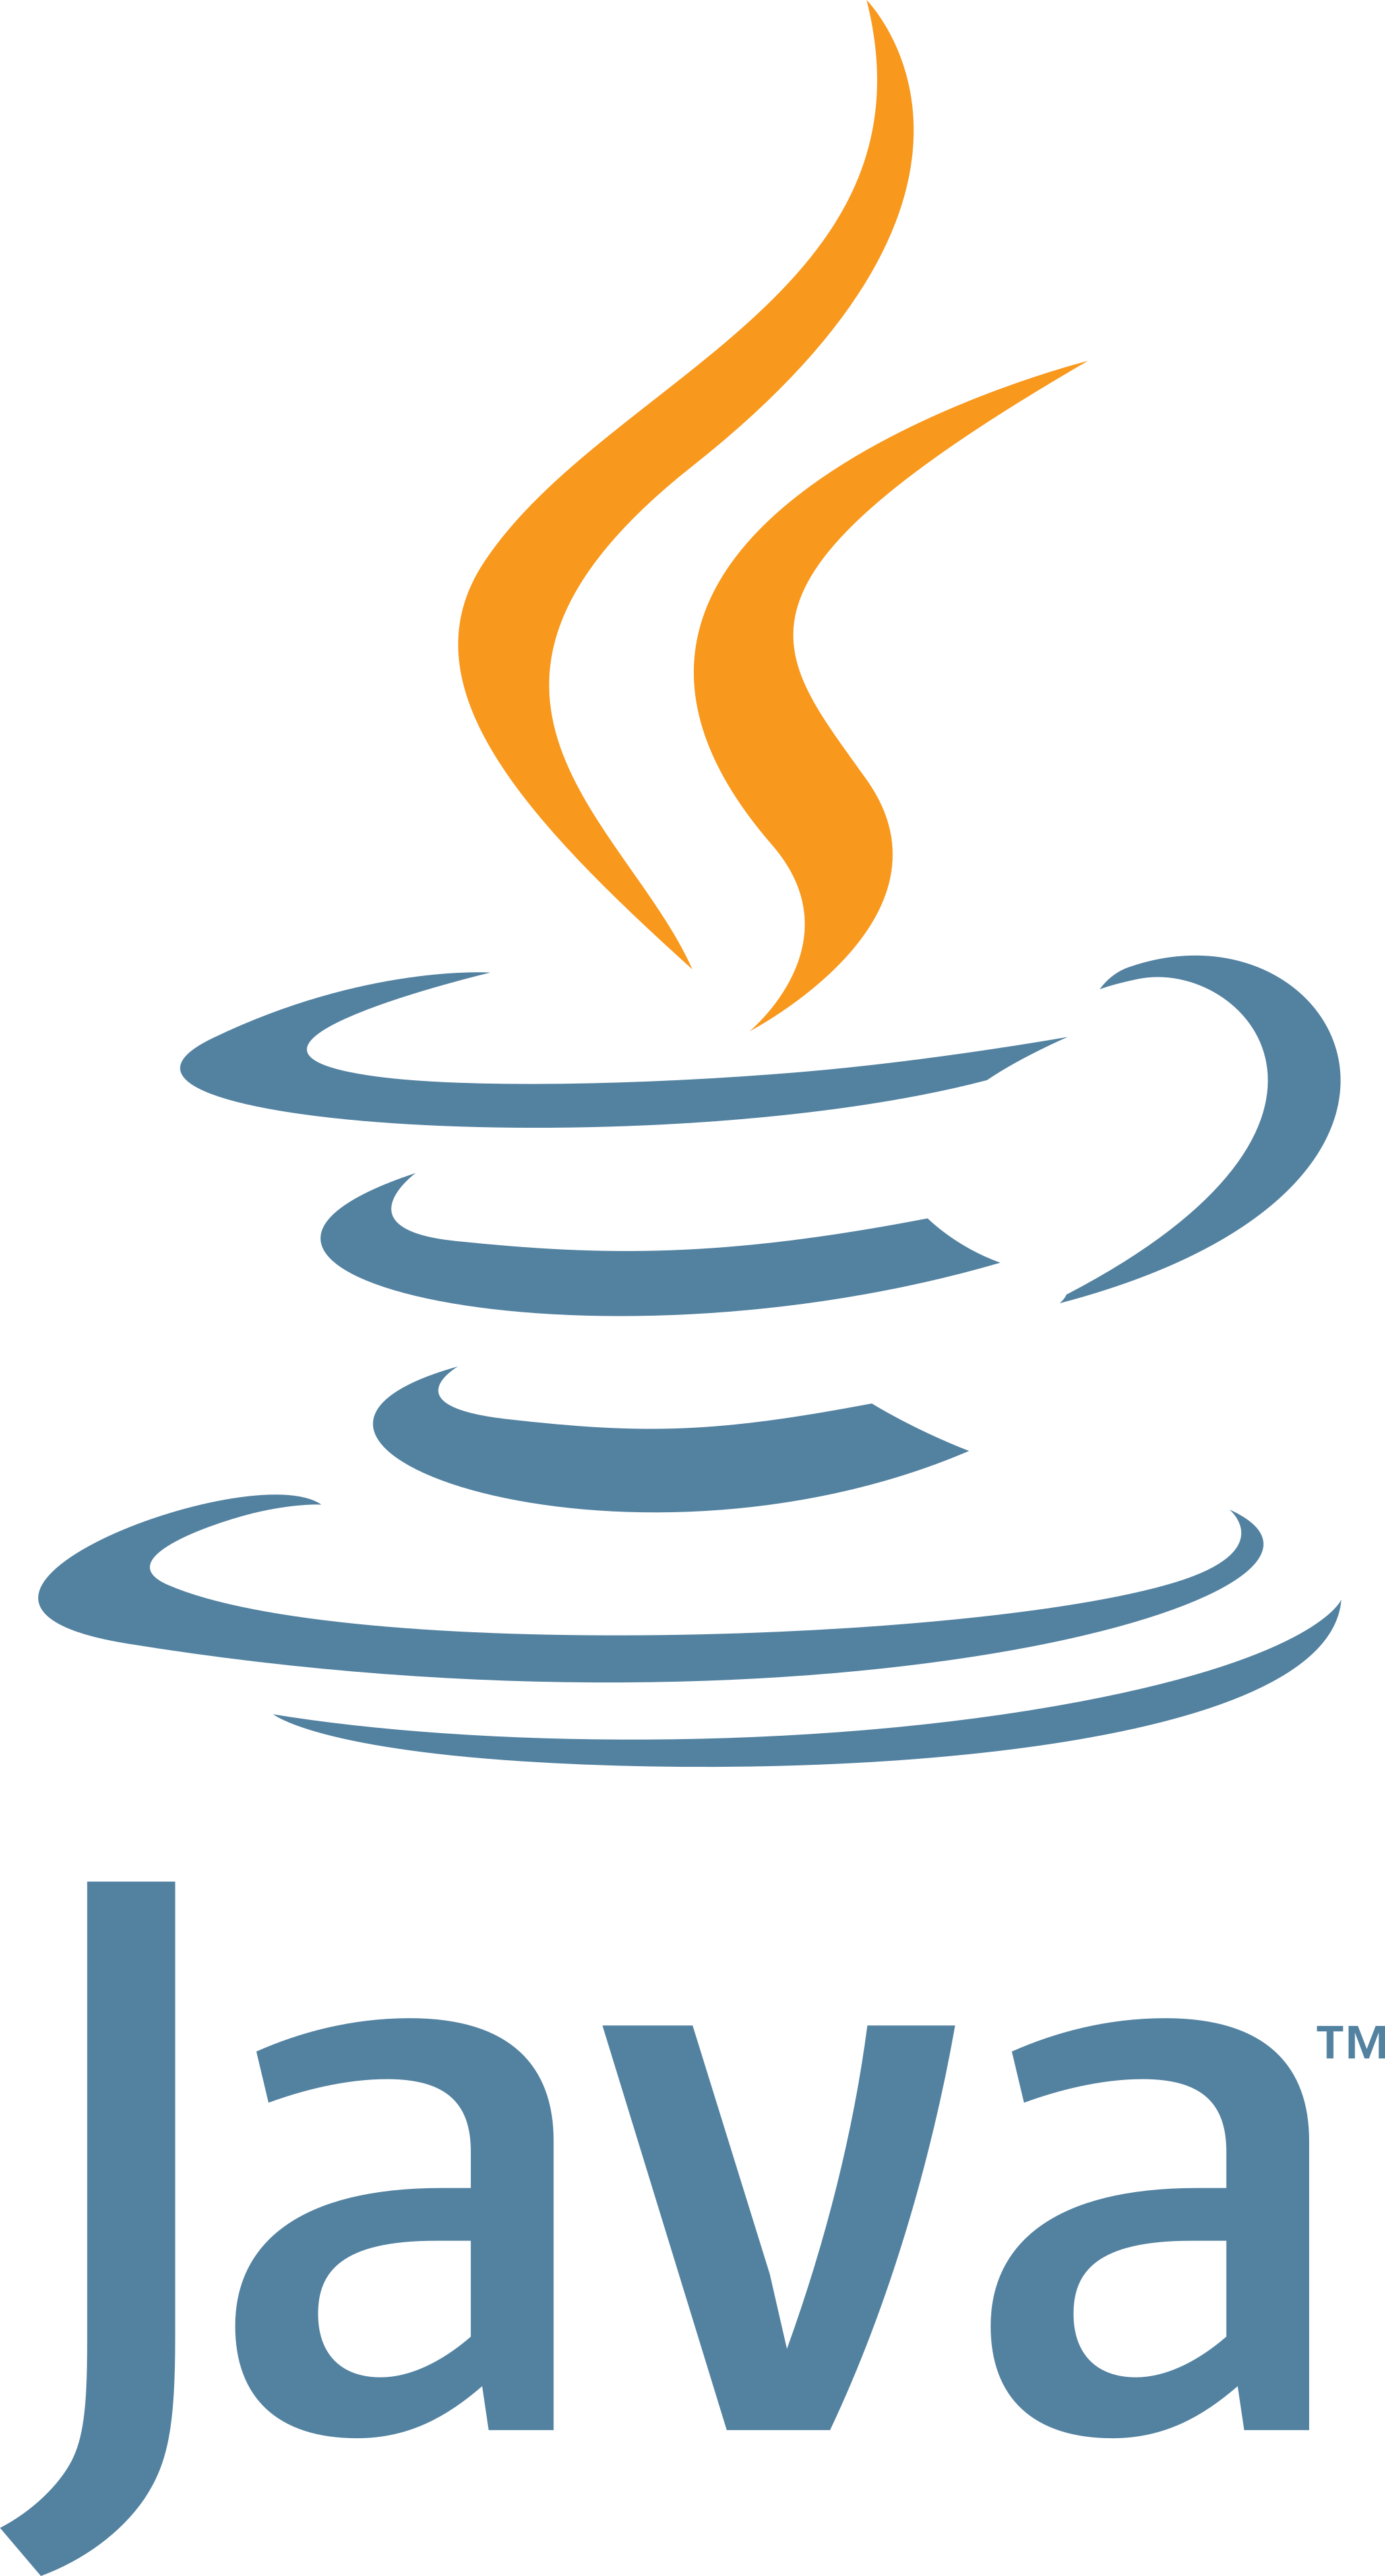 logo Java